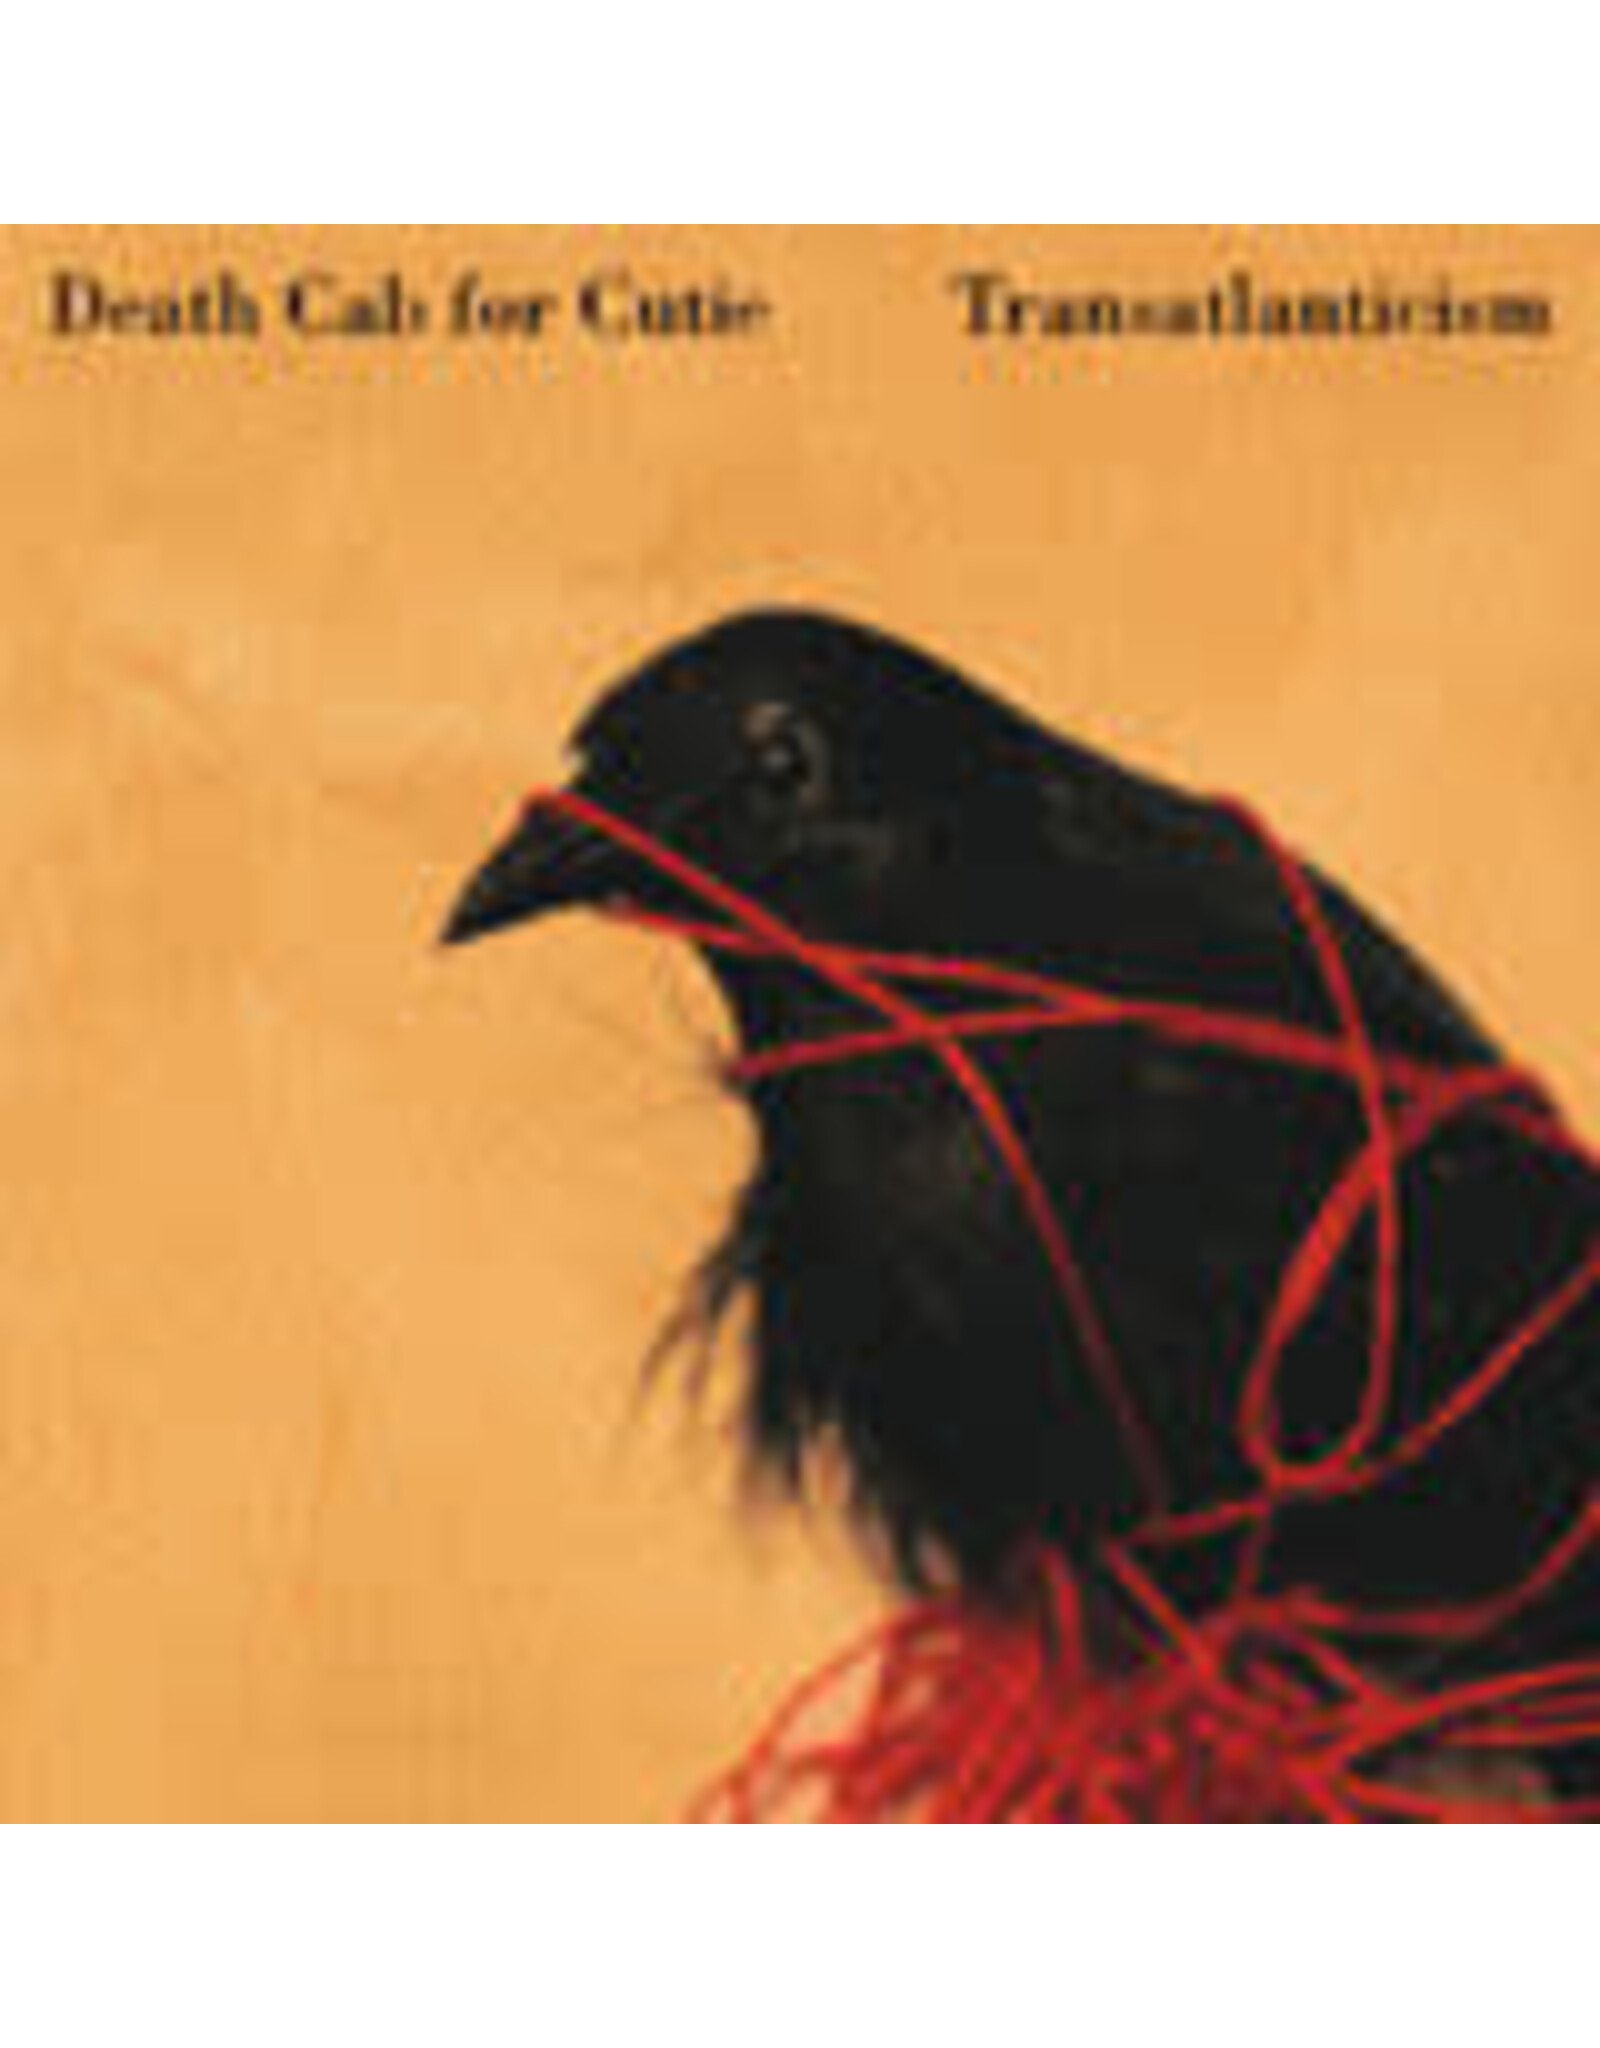 Barsuk Death Cab for Cutie: Transatlanticism (20th Anniversary) LP